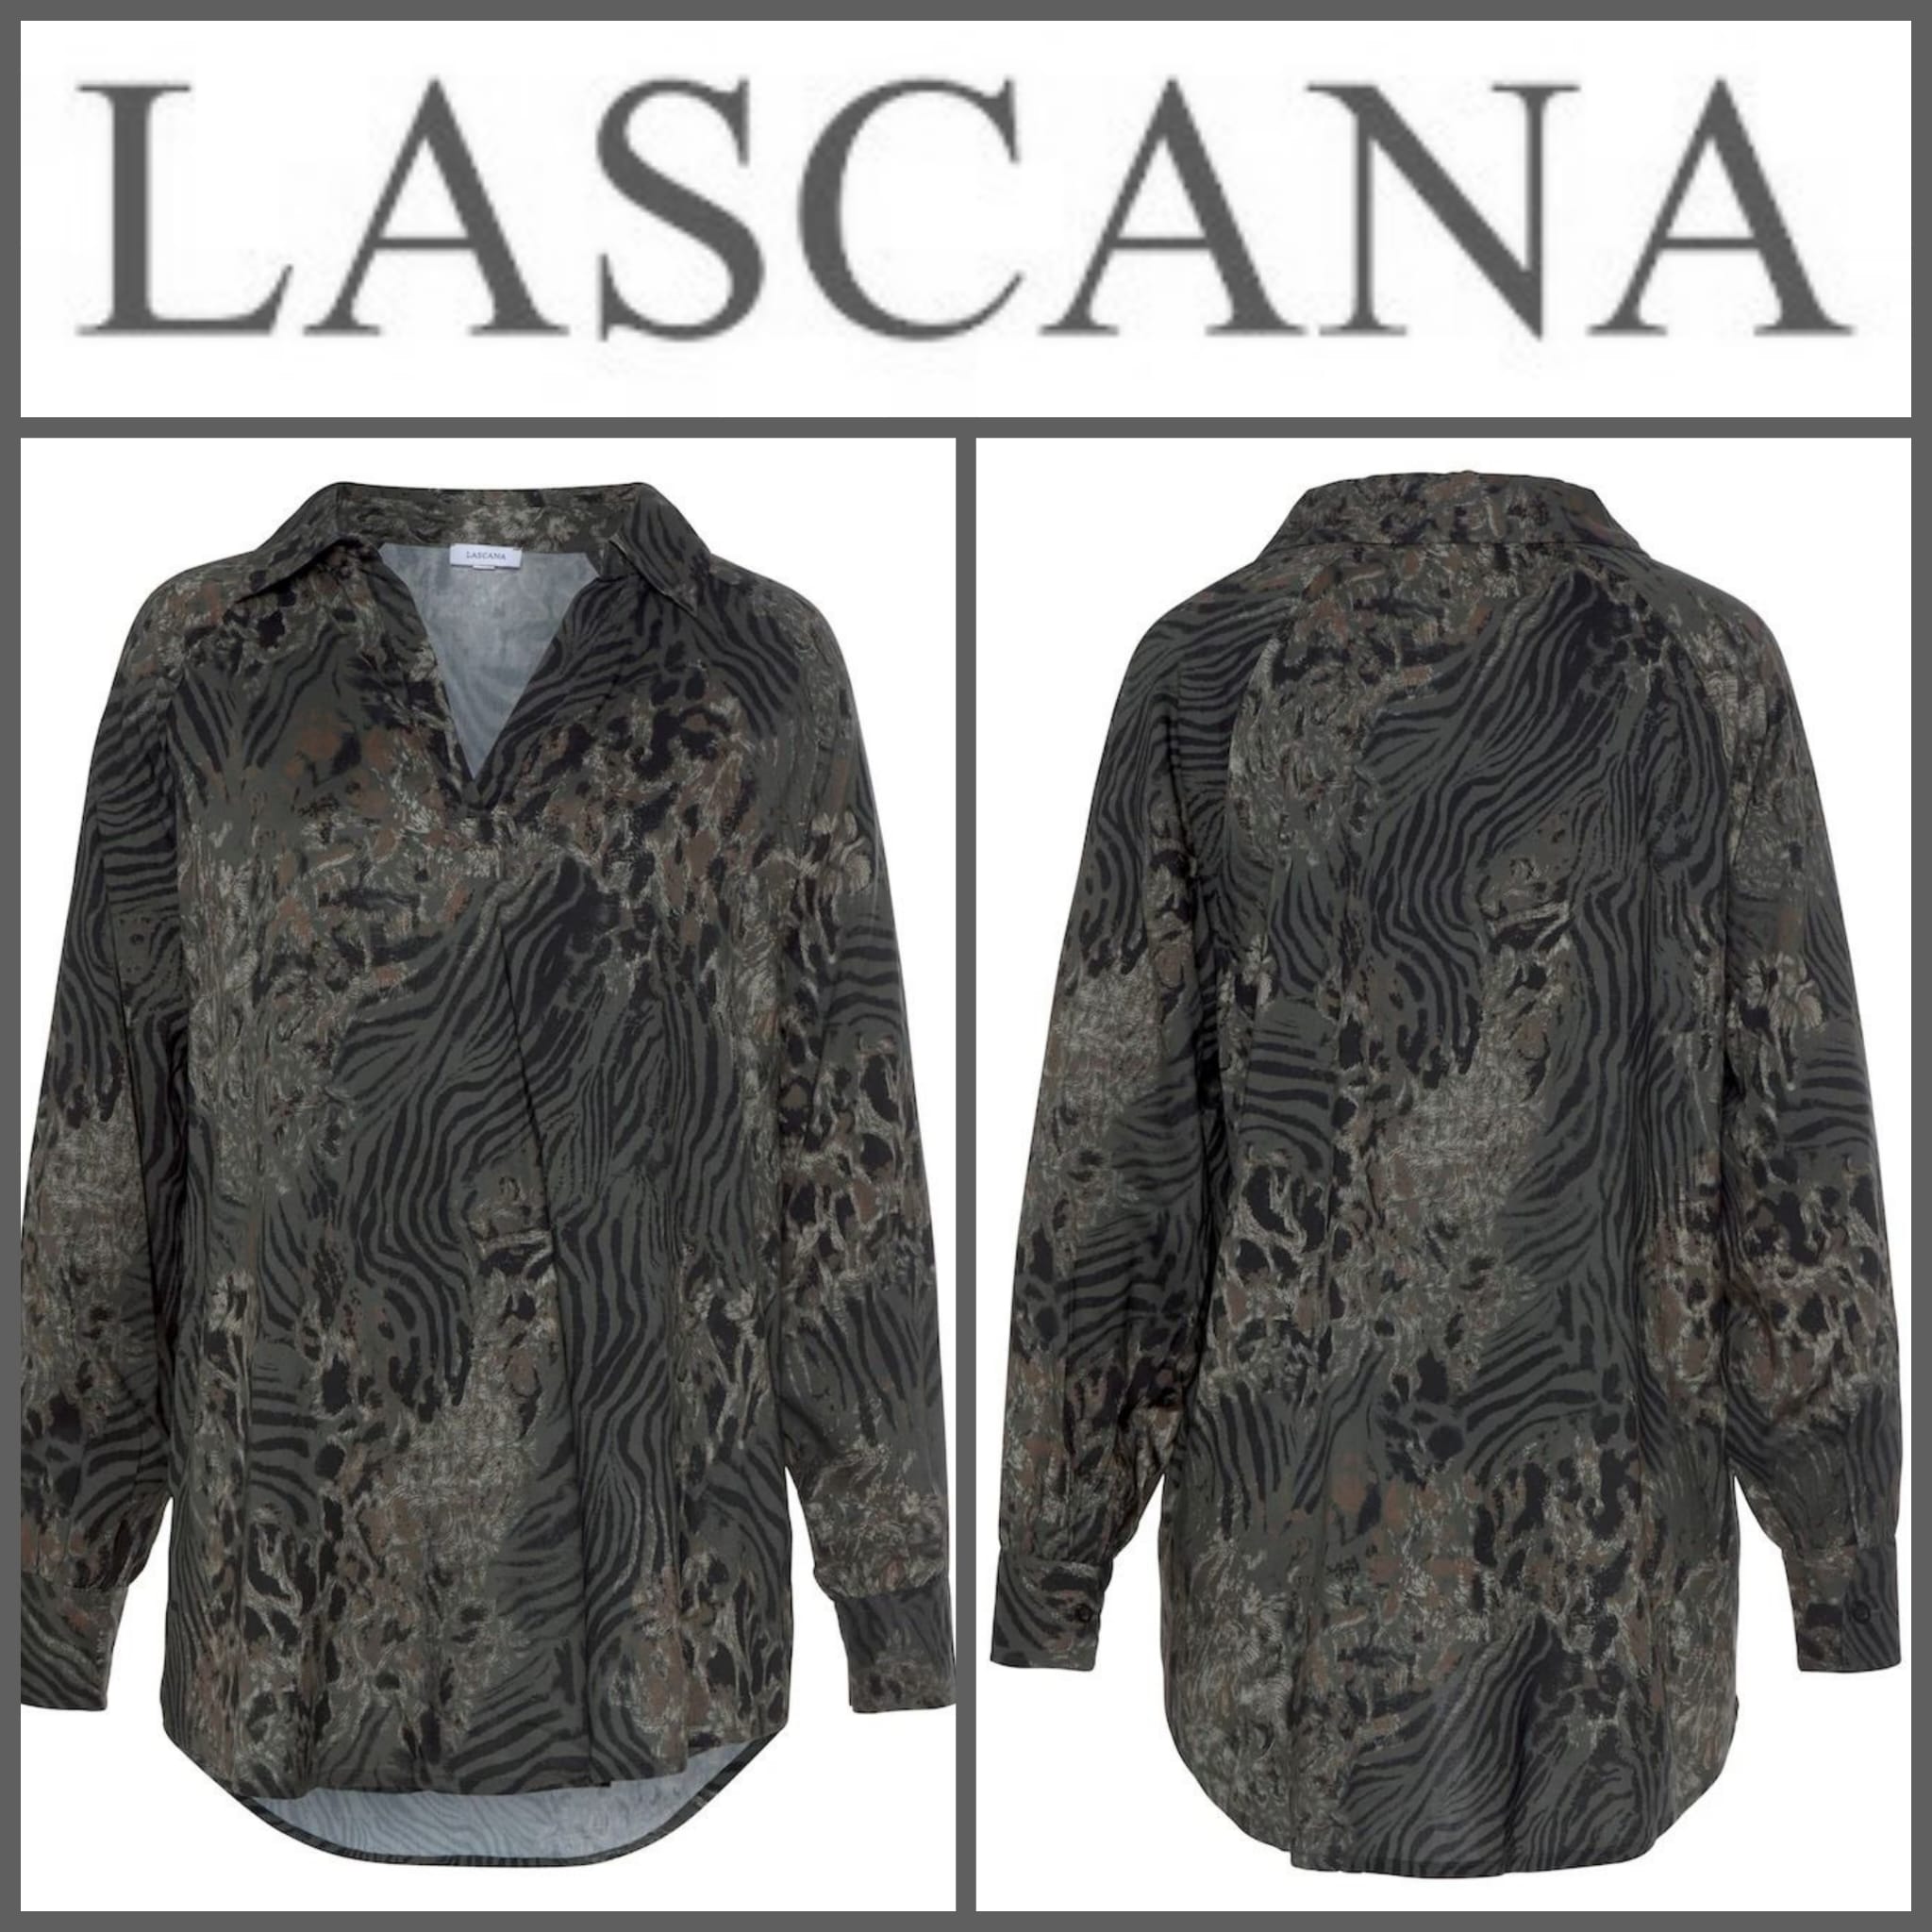 020132 Women's blouse by Lascana